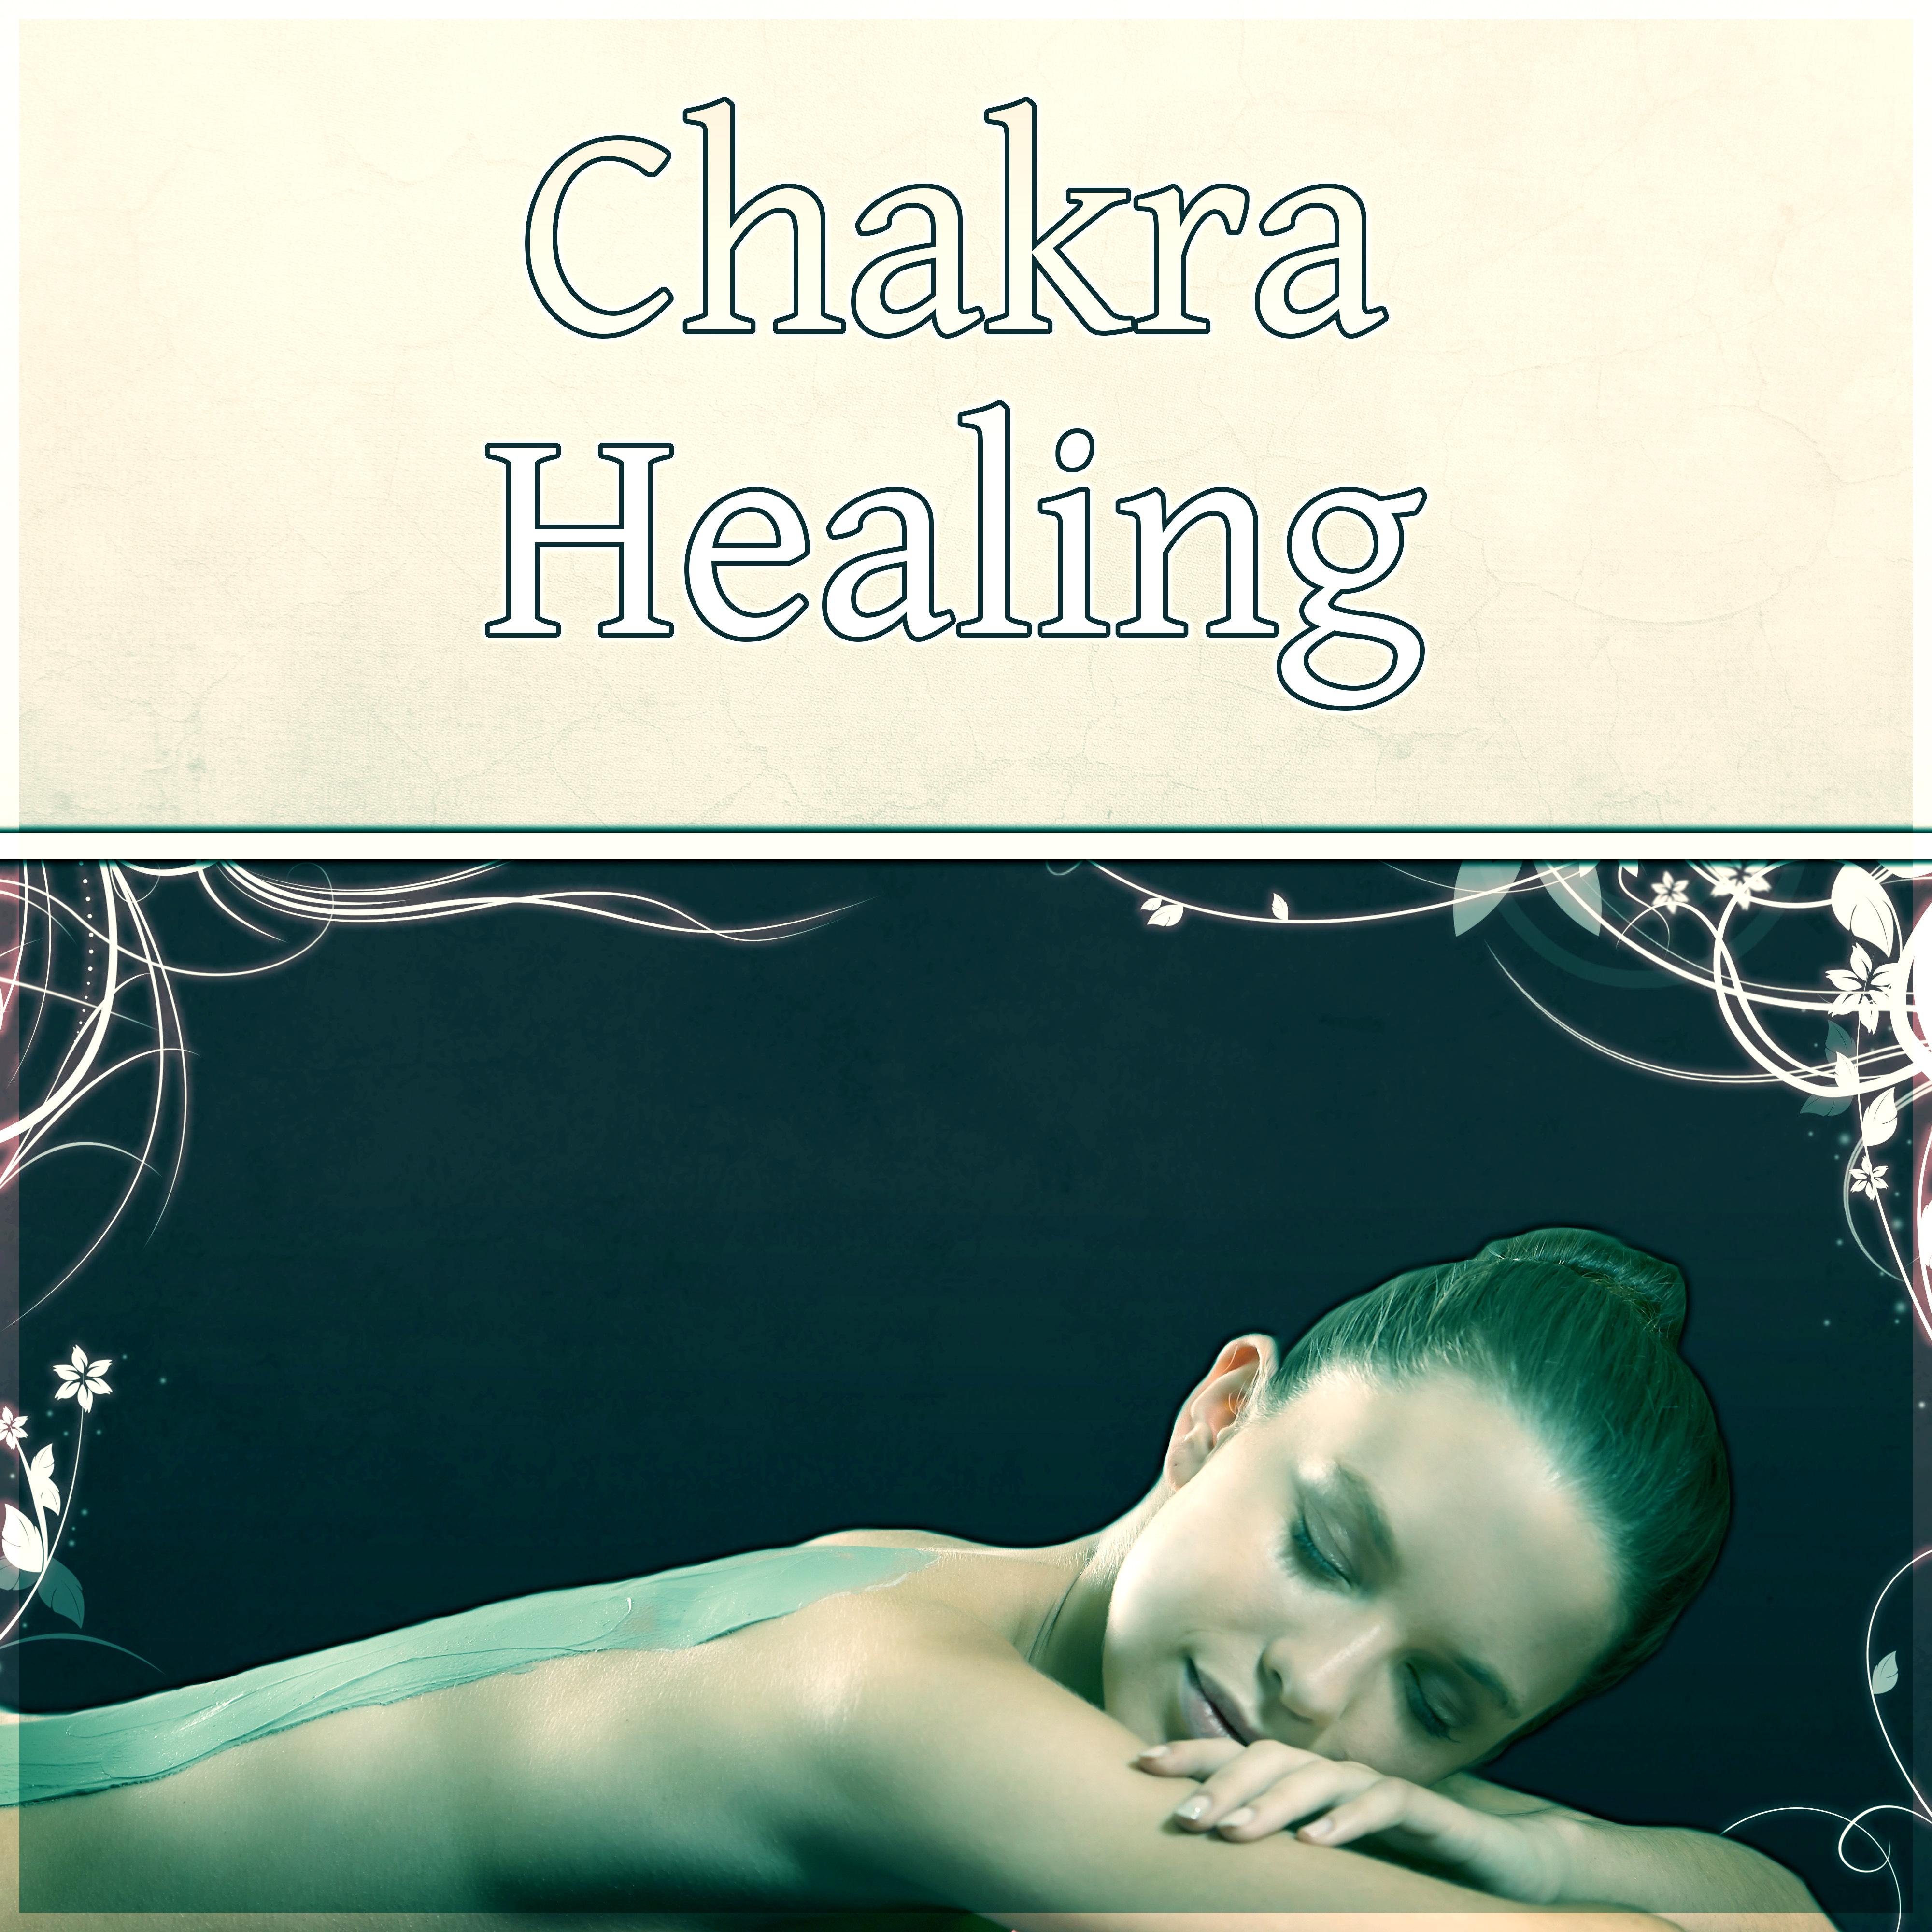 Chakra Healing - Spa & Wellness Center, Ocean Waves, Birds, Crickets, Water Sounds, Falling Rain